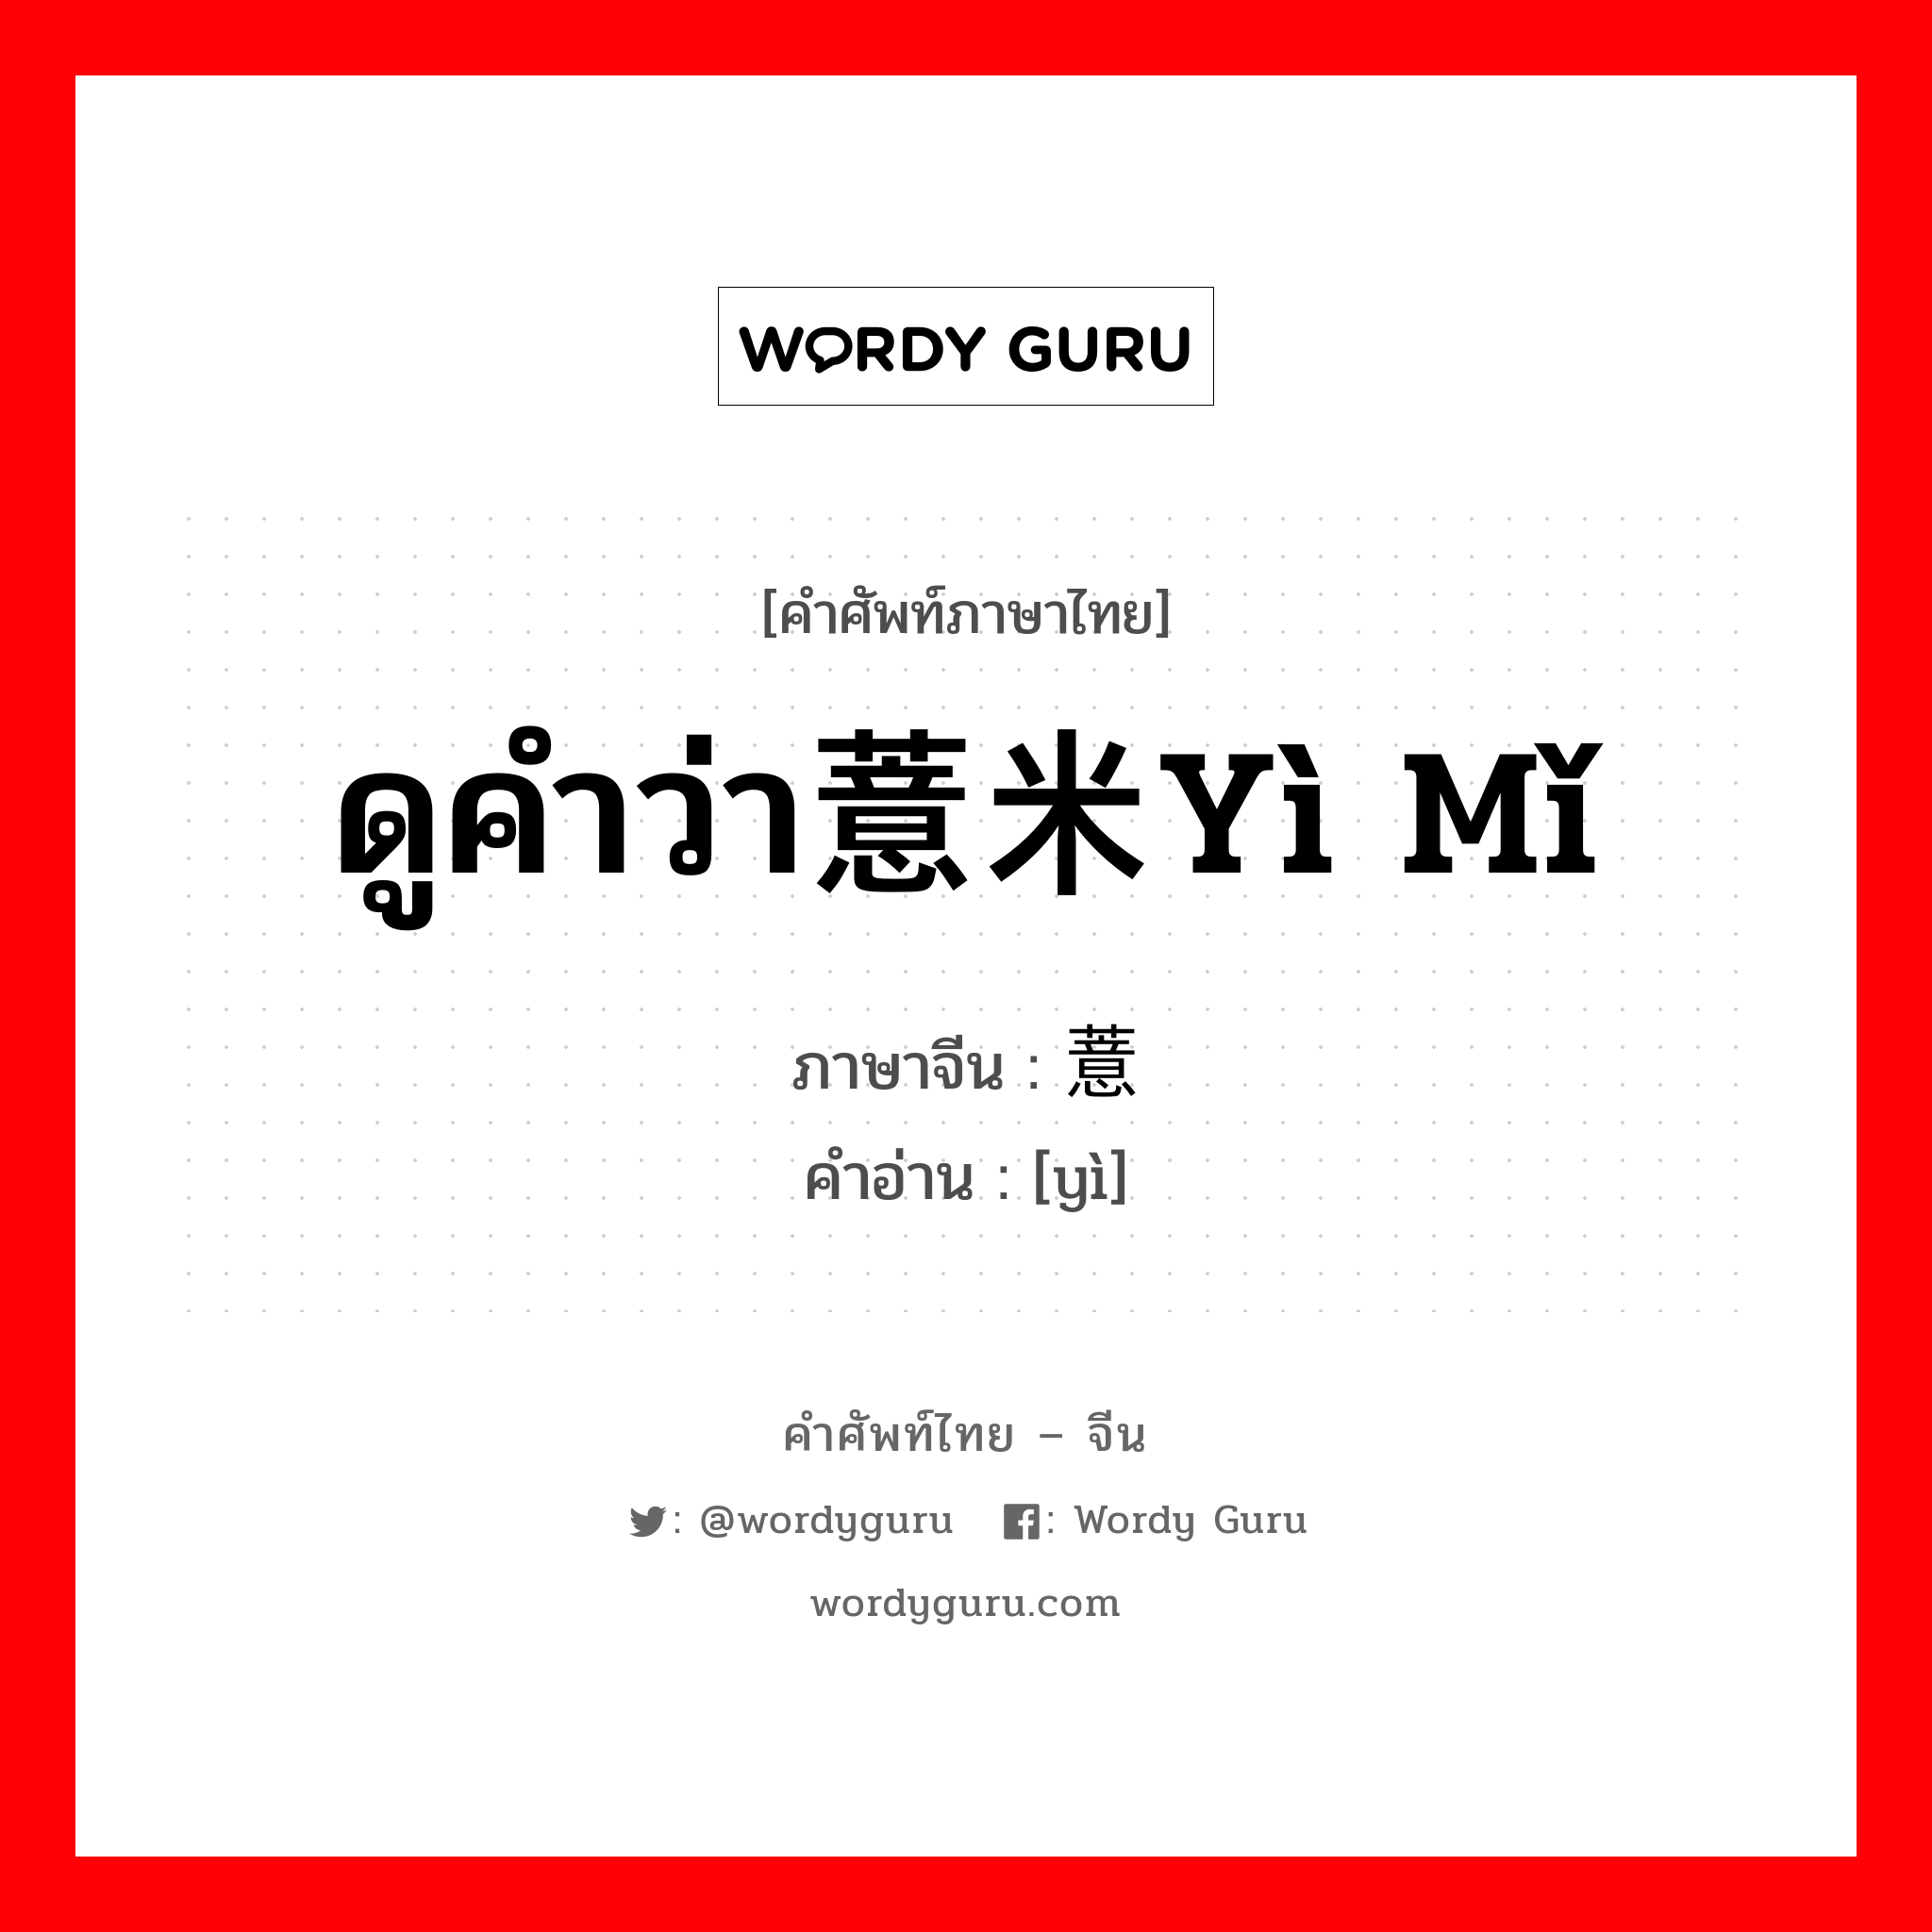 ดูคำว่า薏米yì mǐ ภาษาจีนคืออะไร, คำศัพท์ภาษาไทย - จีน ดูคำว่า薏米yì mǐ ภาษาจีน 薏 คำอ่าน [yì]